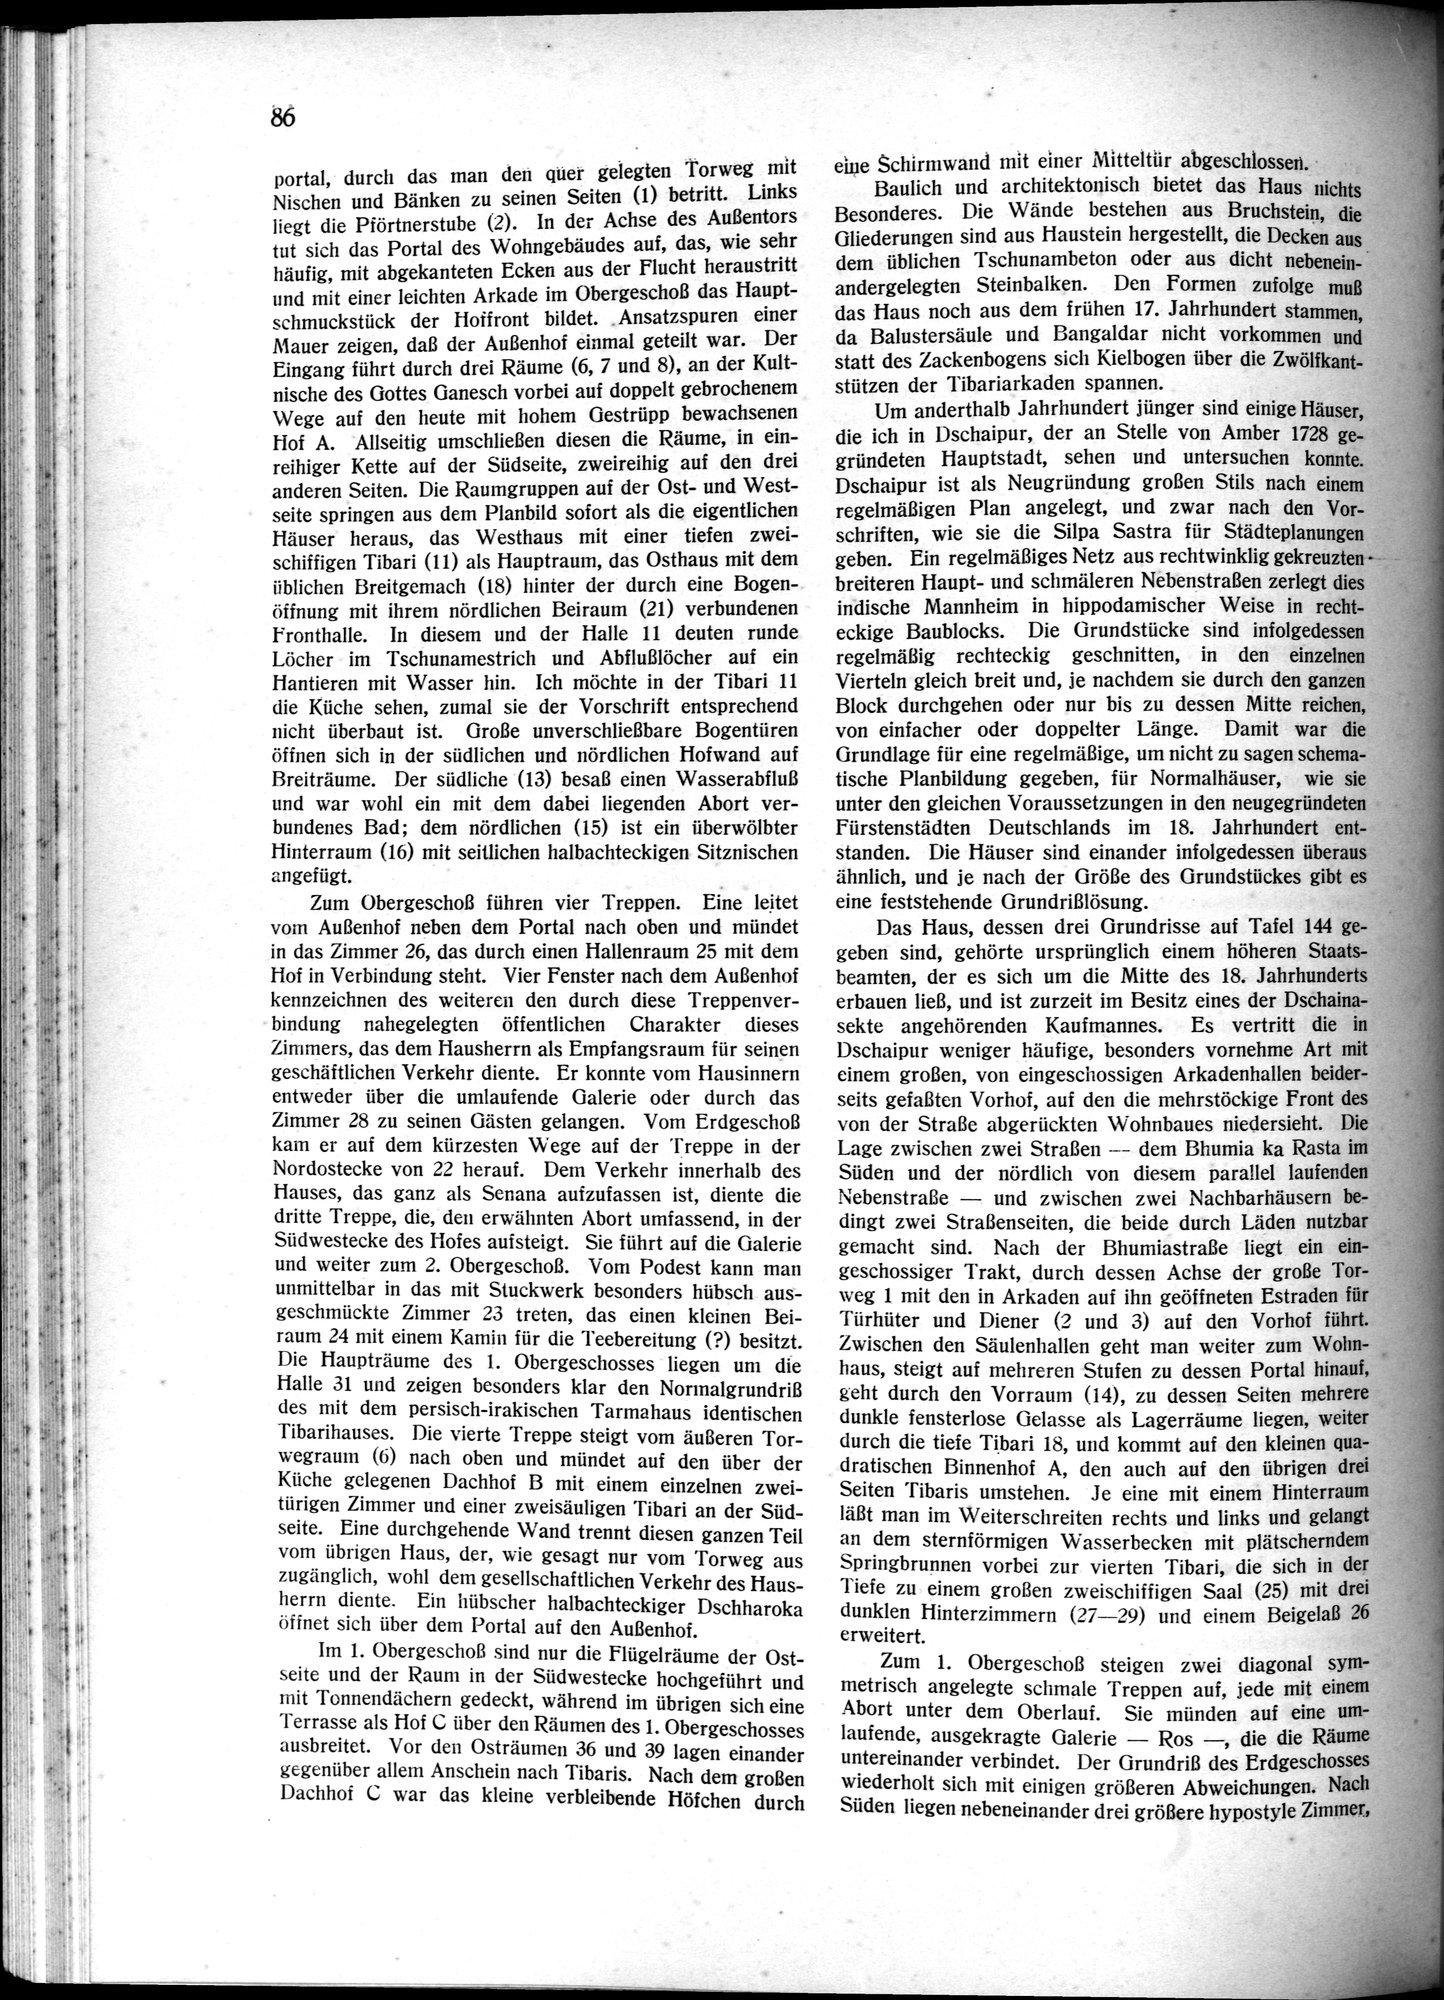 Indische Palaste und Wohnhauser : vol.1 / Page 96 (Grayscale High Resolution Image)